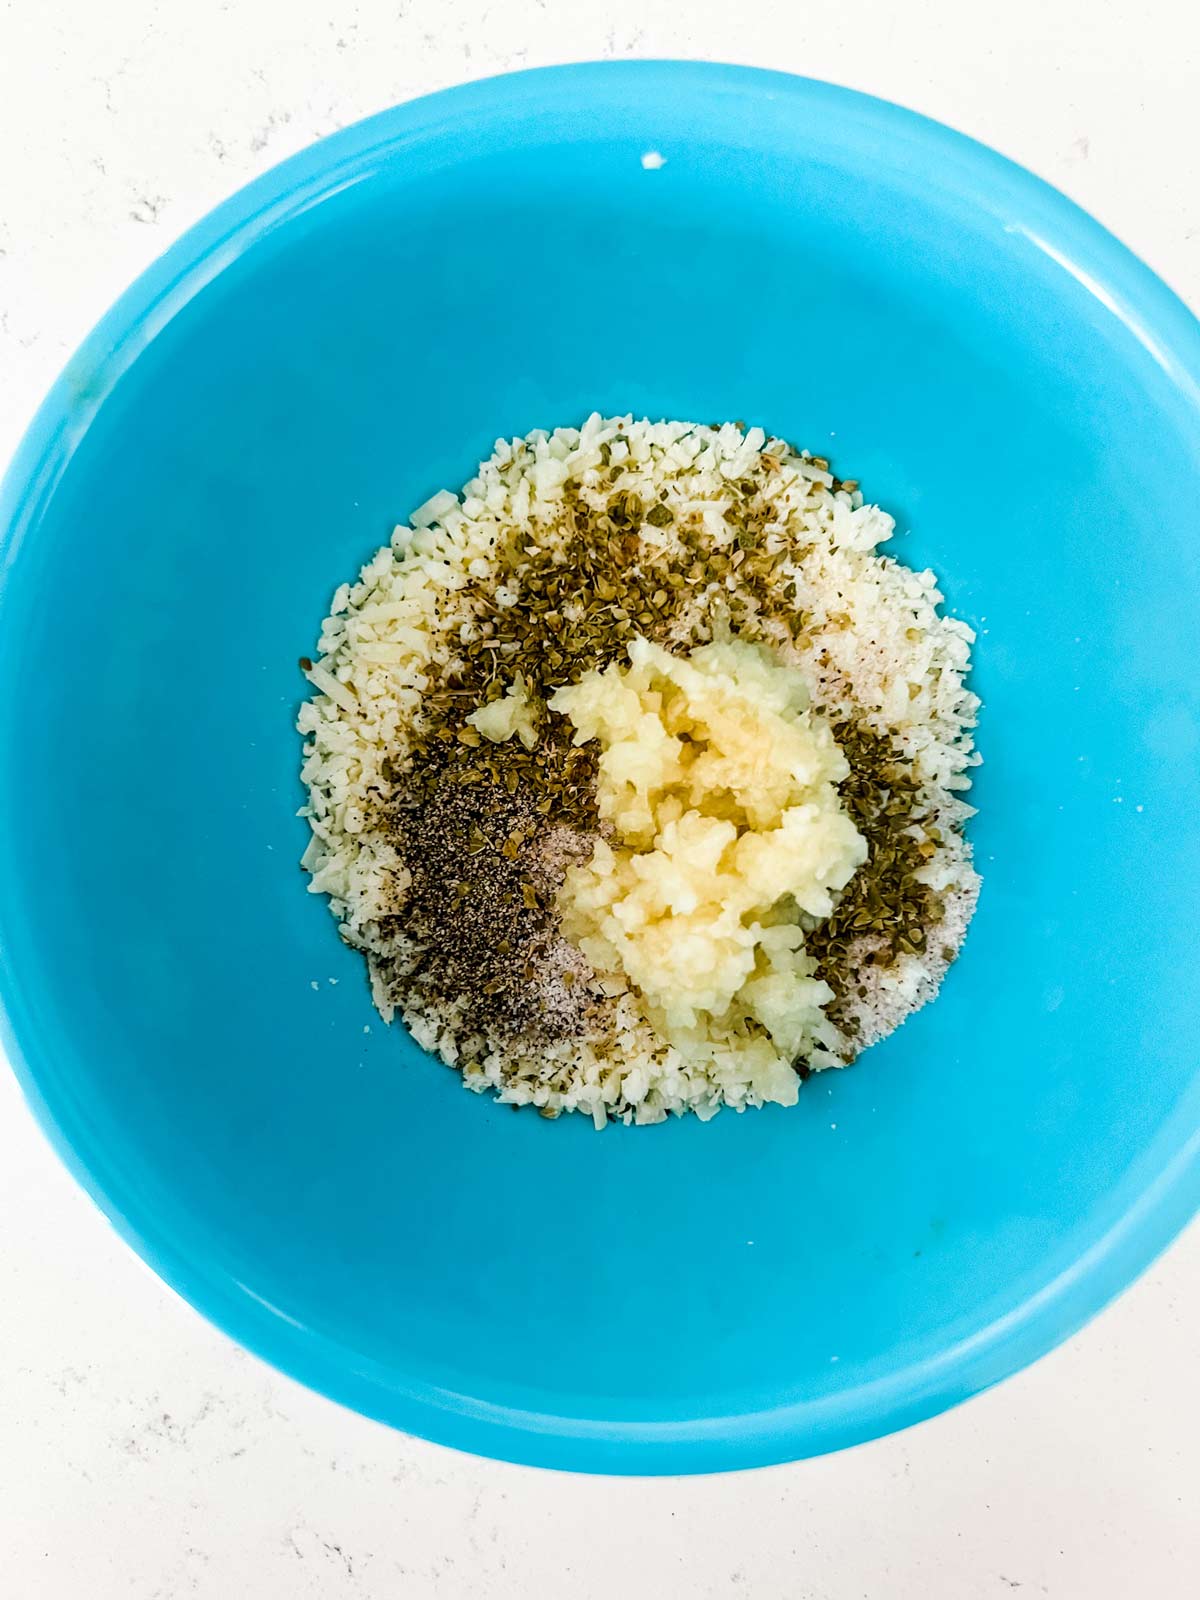 Parmesan, garlic, and seasonings in a small blue bowl.